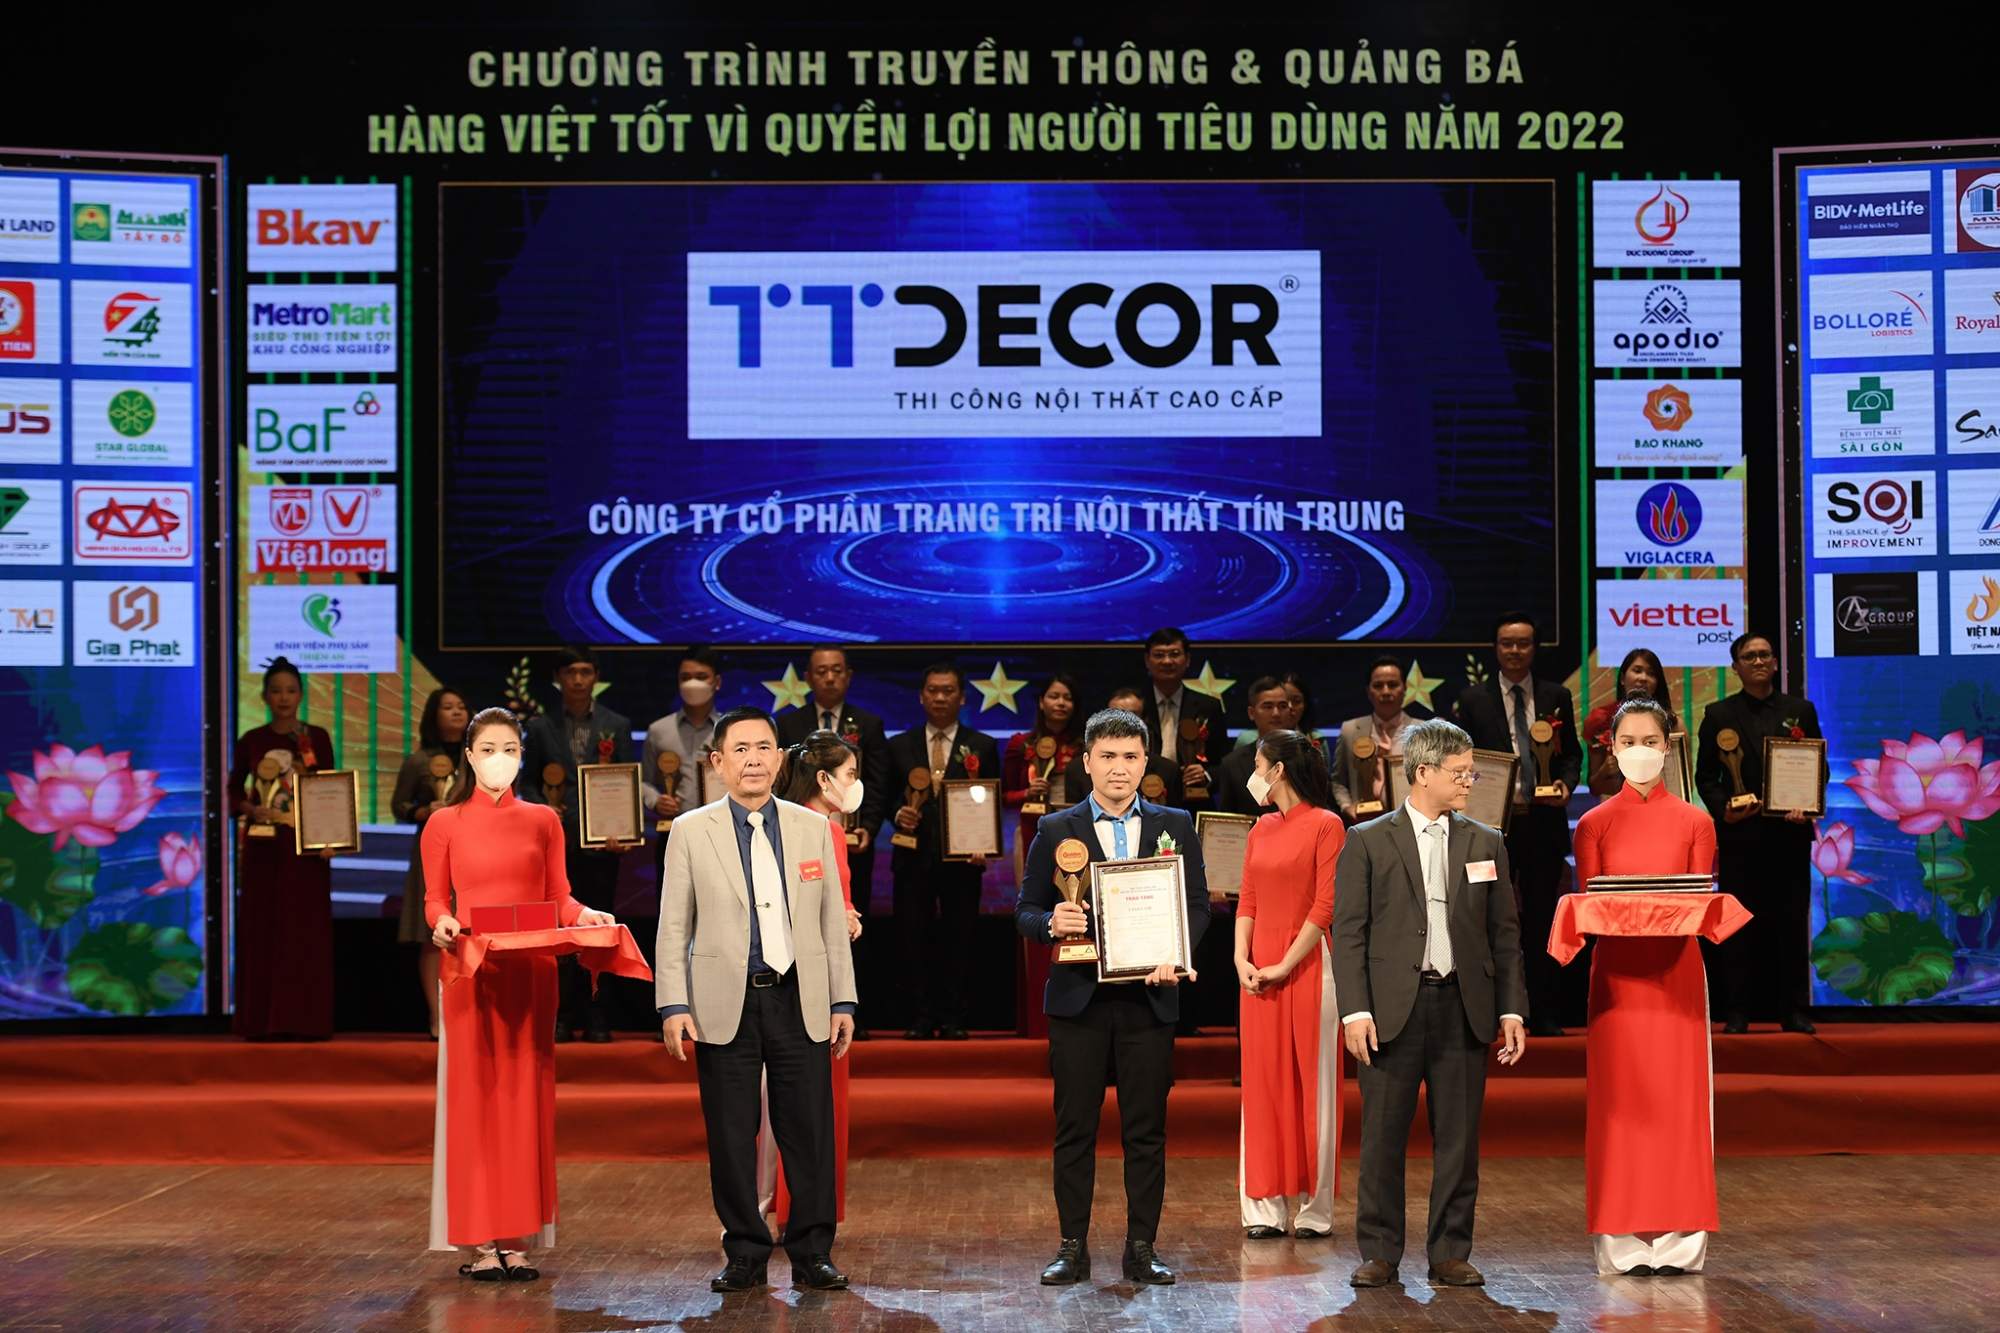 TTDECOR lọt Top 20 “Hàng Việt chất lượng tốt vì quyền lợi người tiêu dùng”